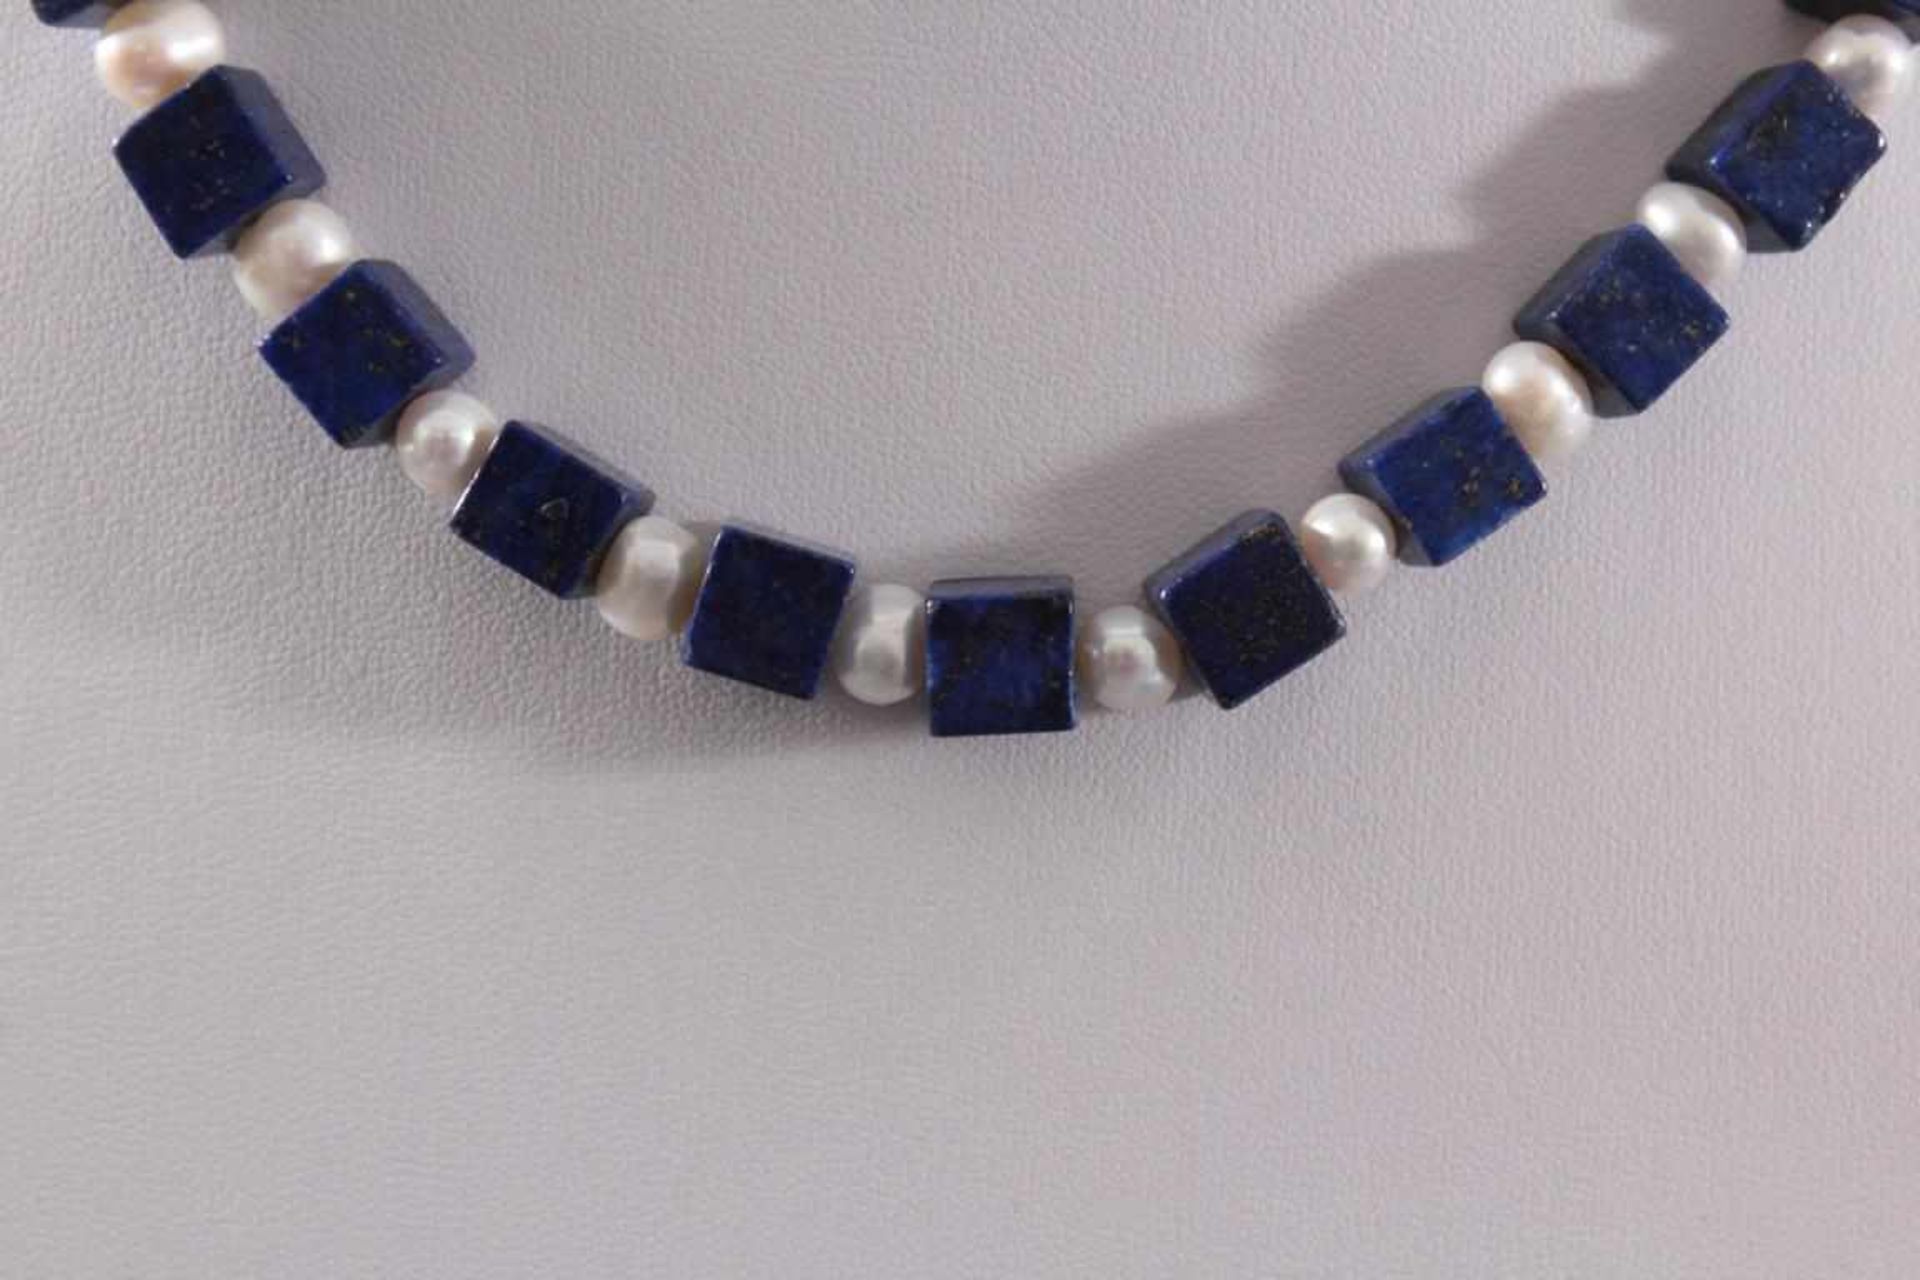 Halskette mit Lapislazuli Steinen und Frischwasser PerlenKarabiner-Verschluss aus Sterling Silber, - Bild 2 aus 2